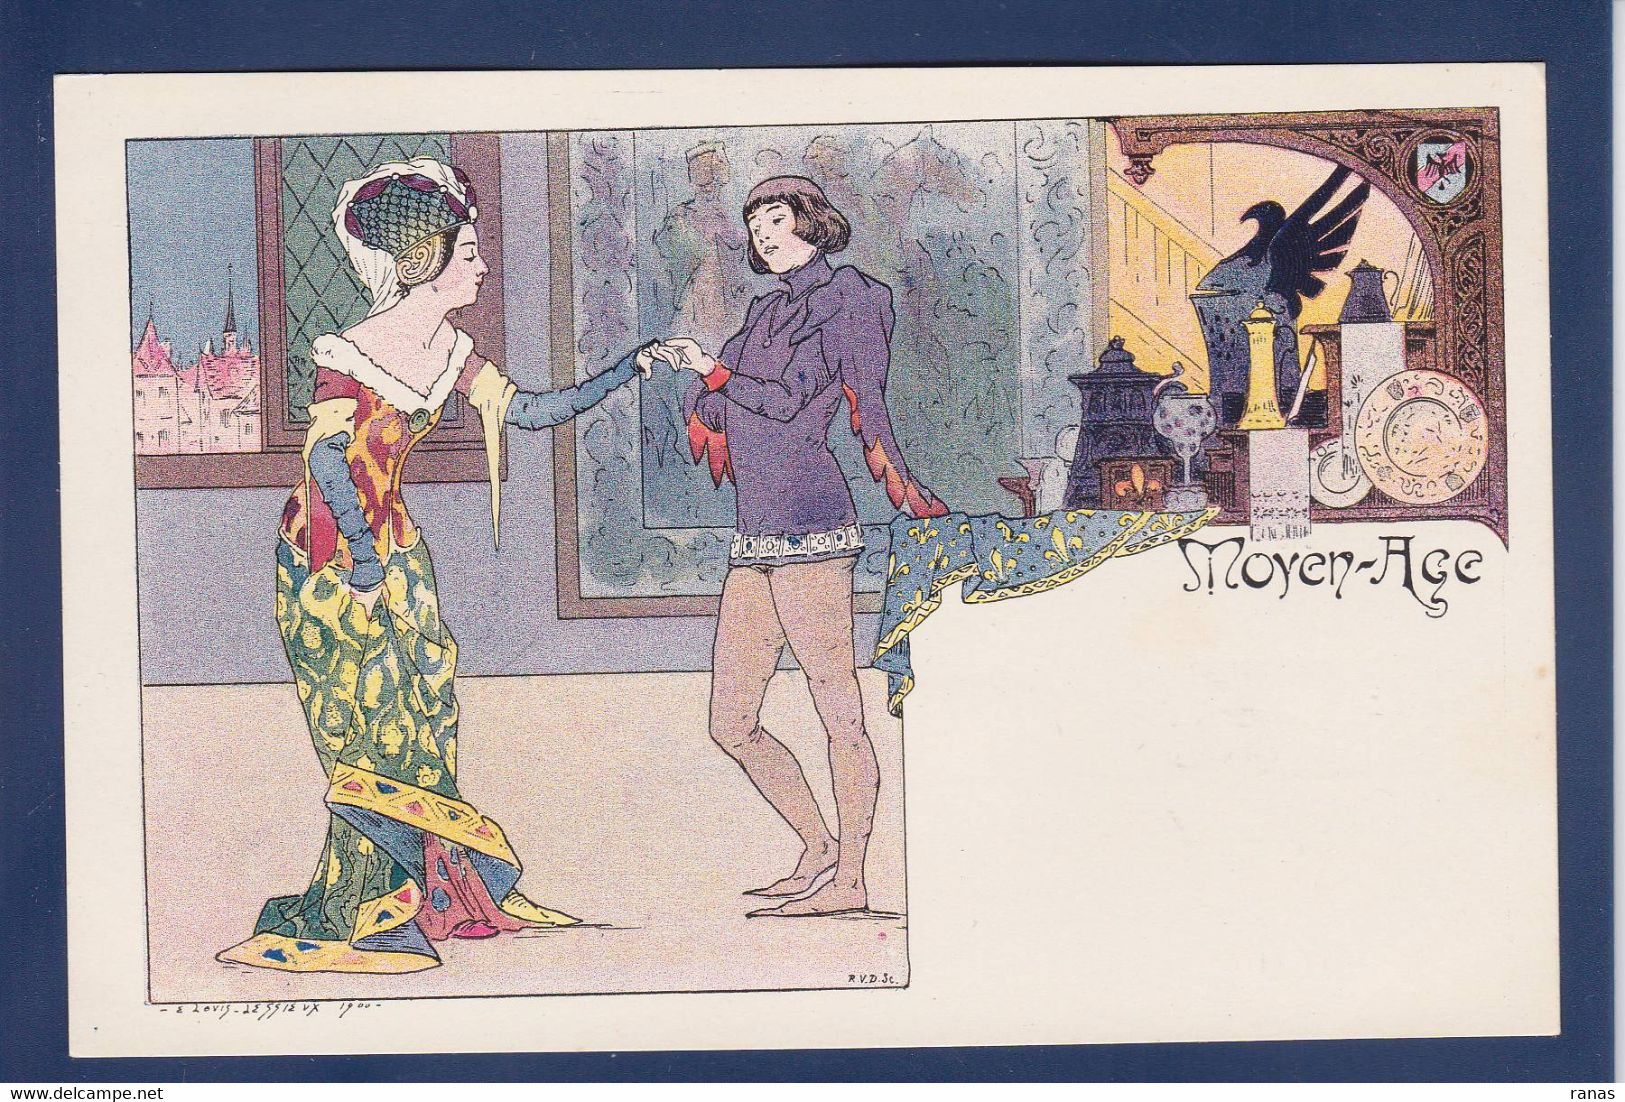 CPA Lessieux Art Nouveau Femme Women Non Circulé Série La Danse état LUXE - Lessieux